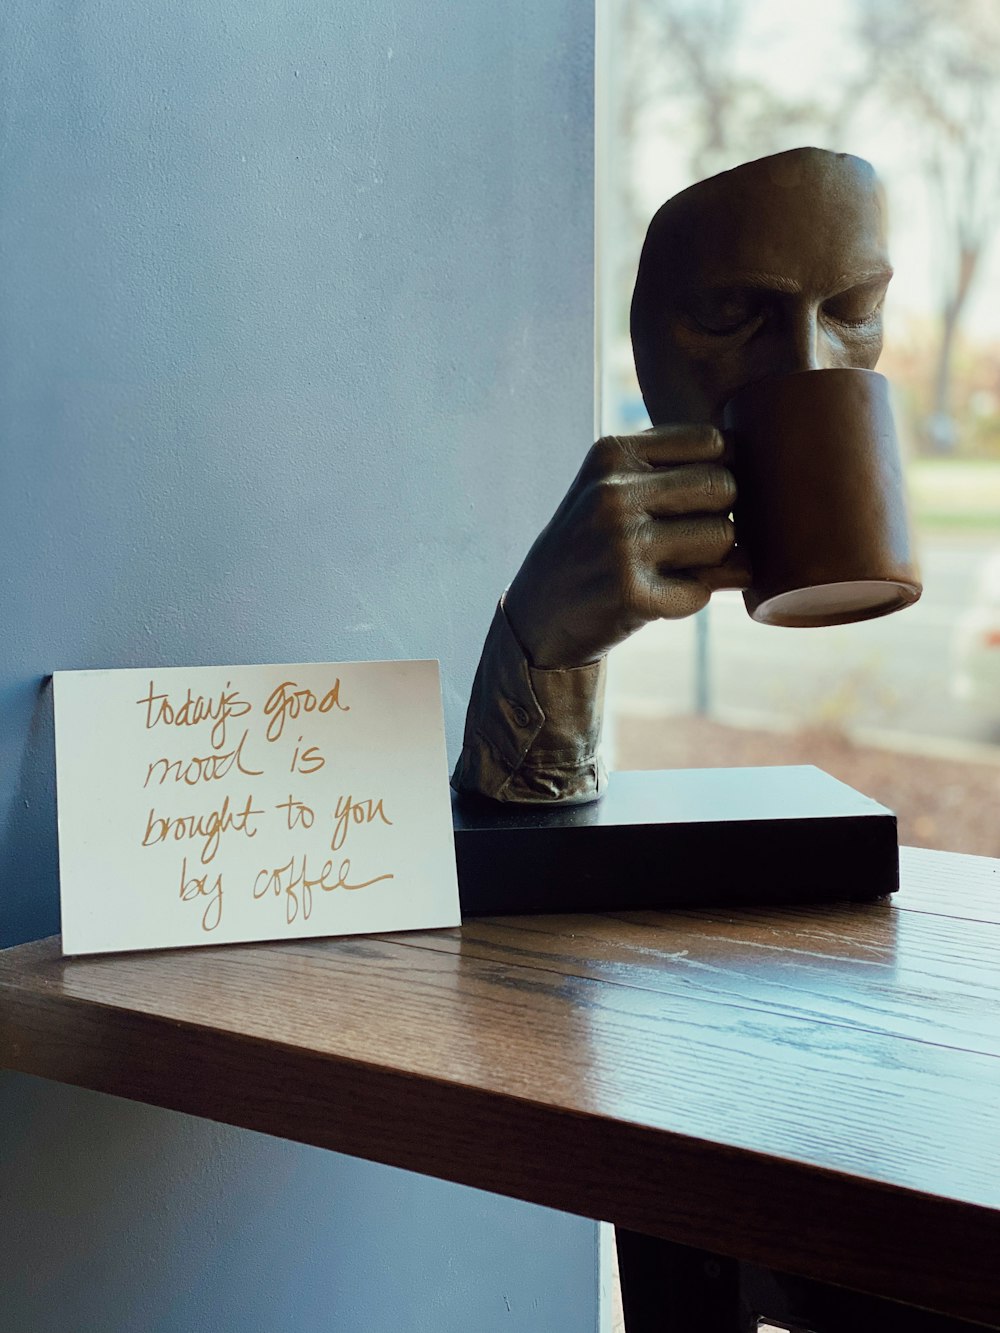 uma estátua de uma pessoa segurando uma xícara de café